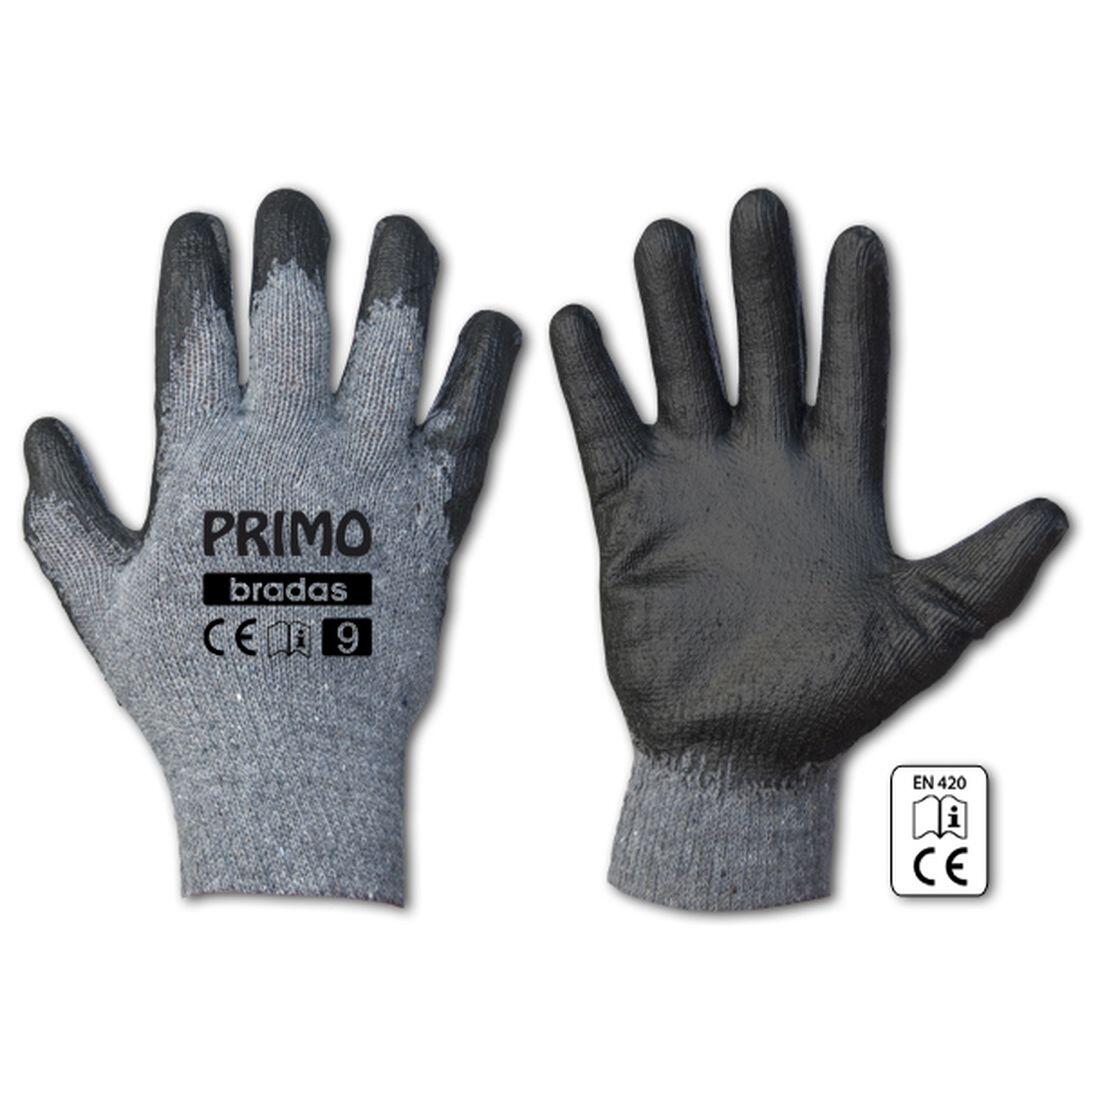 rukavice PRIMO latex 11 0.07 Kg MAXMIX Sklad14 715685 214